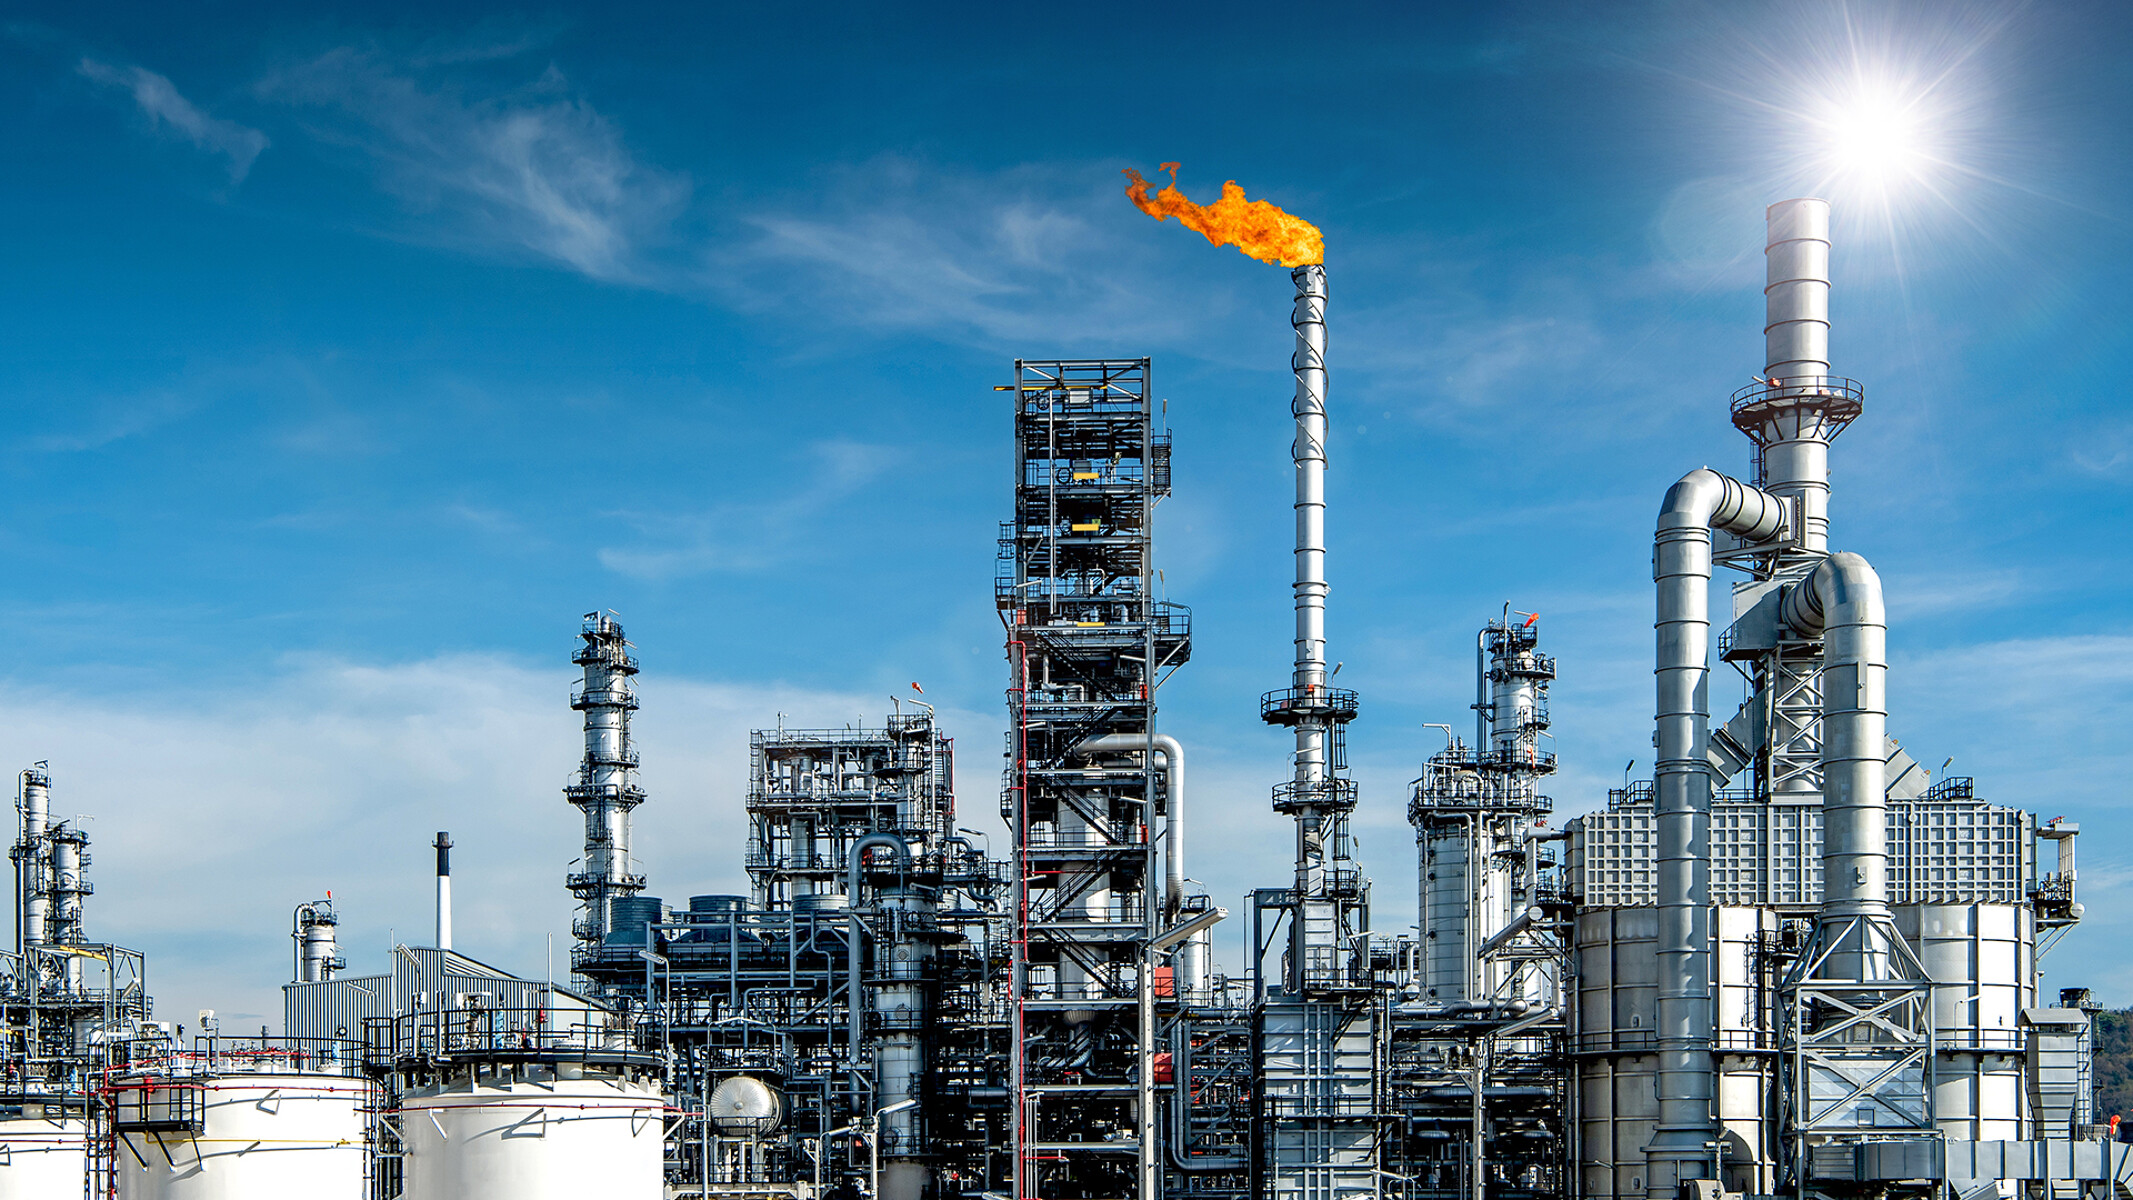 Grand complexe de raffinage pétrolier avec torchère de couleur orange sur un ciel bleu éclatant